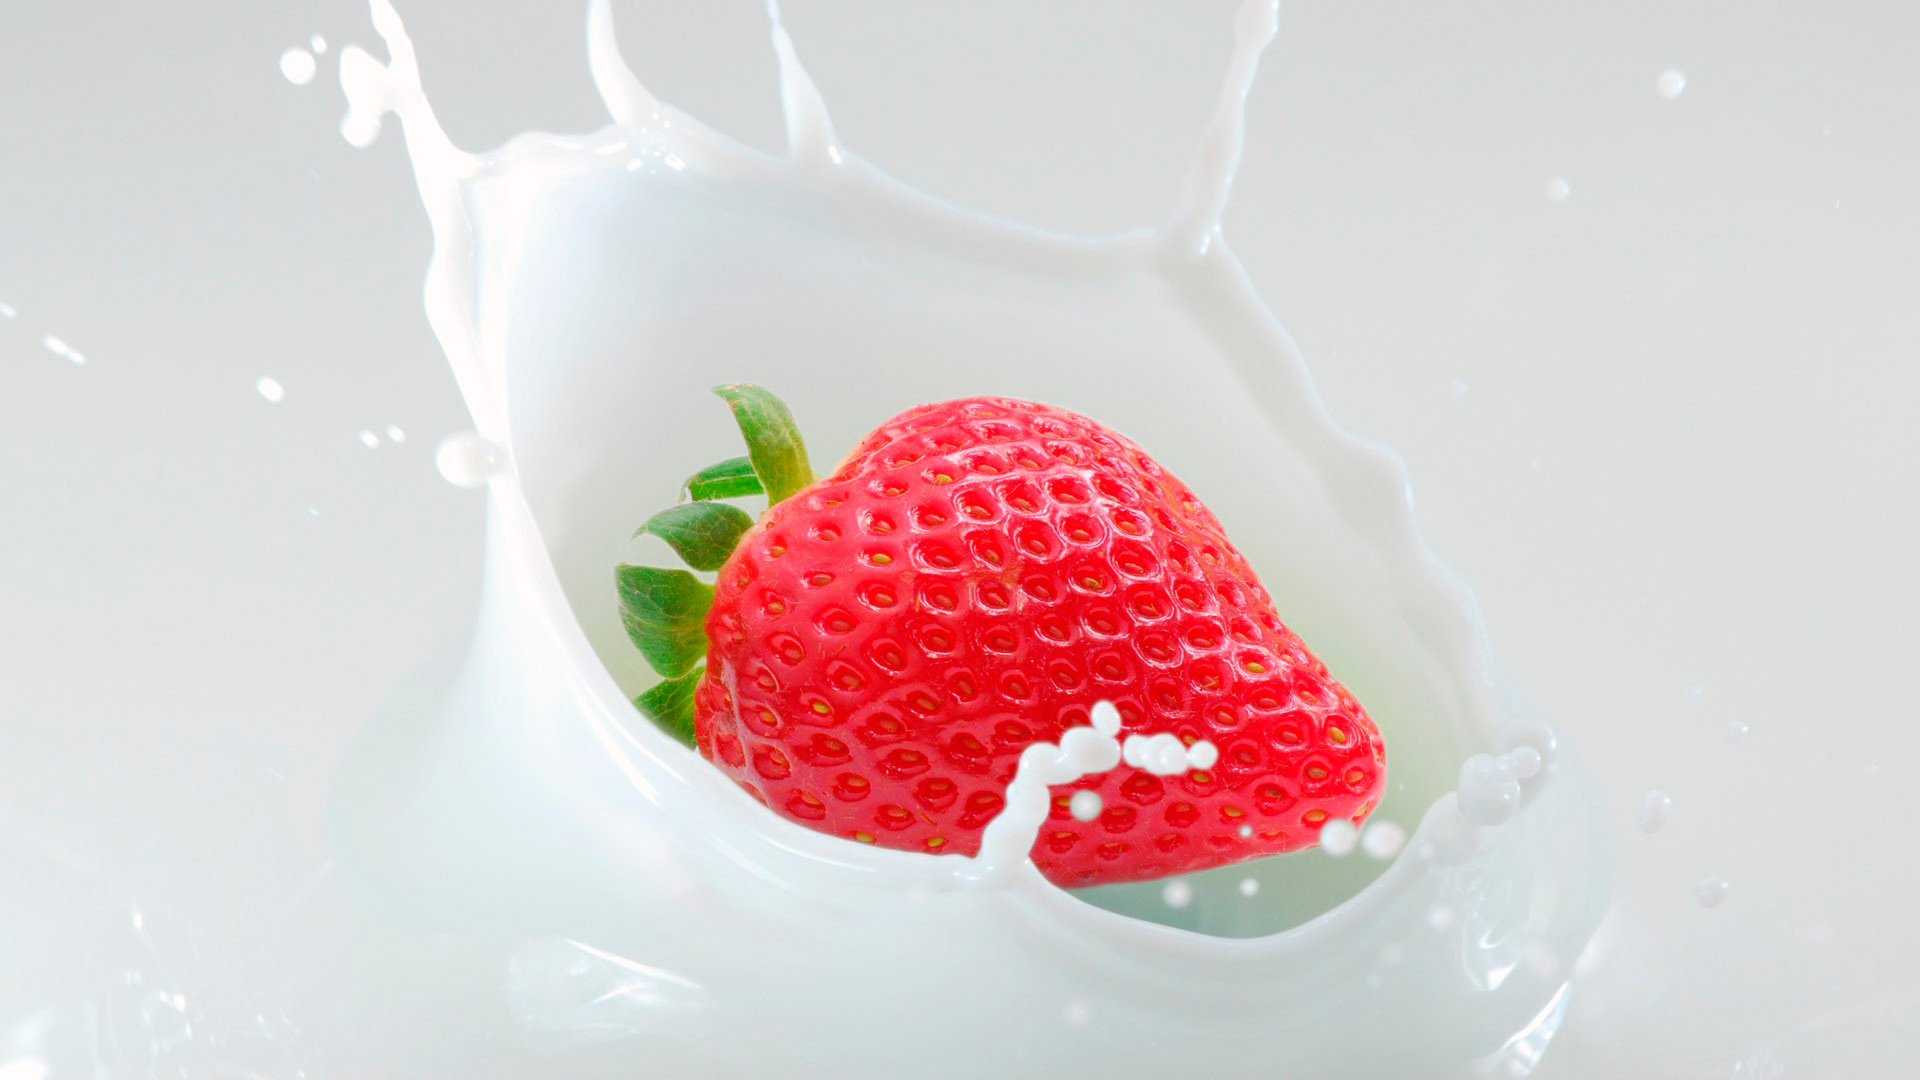 Gambar strawberry